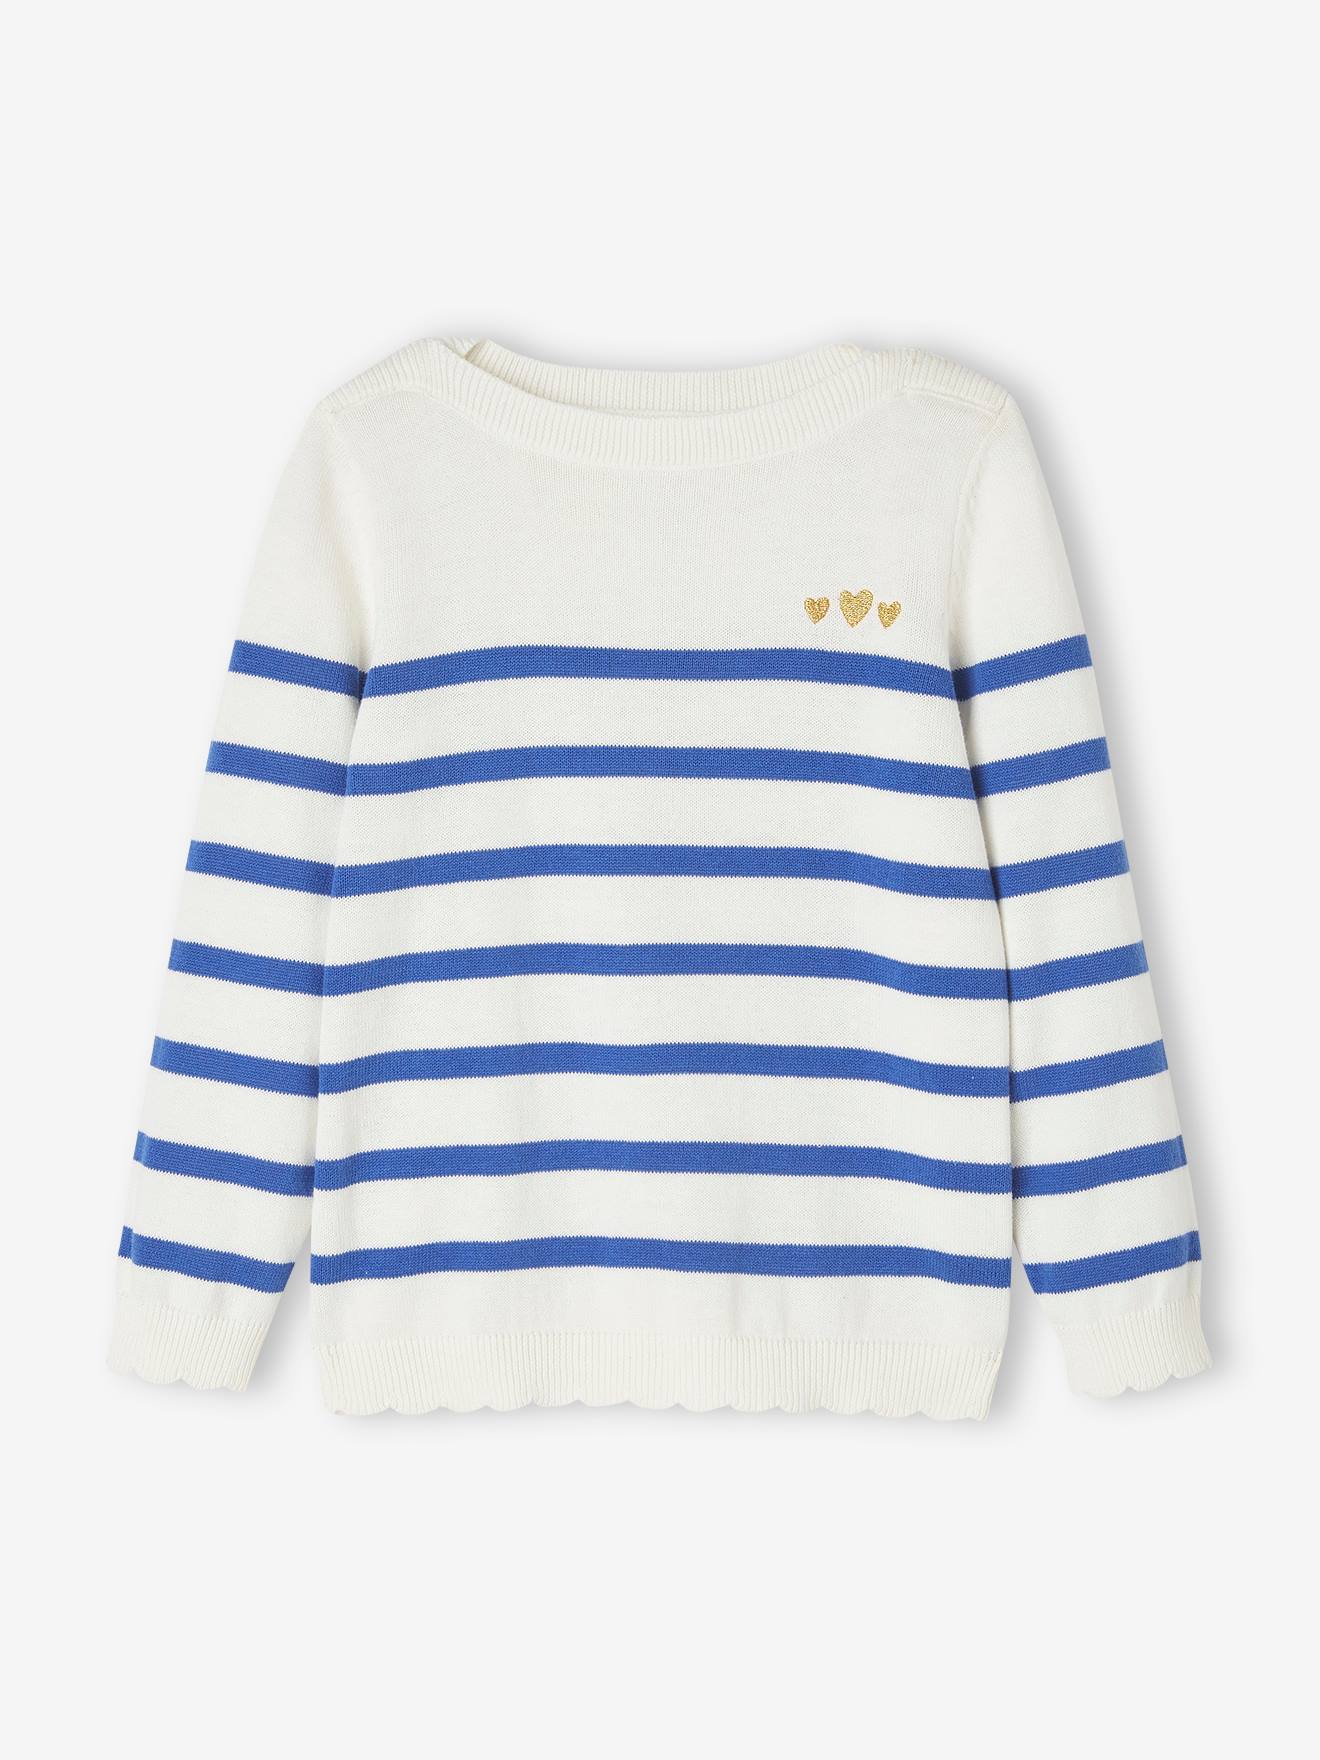 Meisjessweater in zeemanstijl met versieringen blauw, gestreept